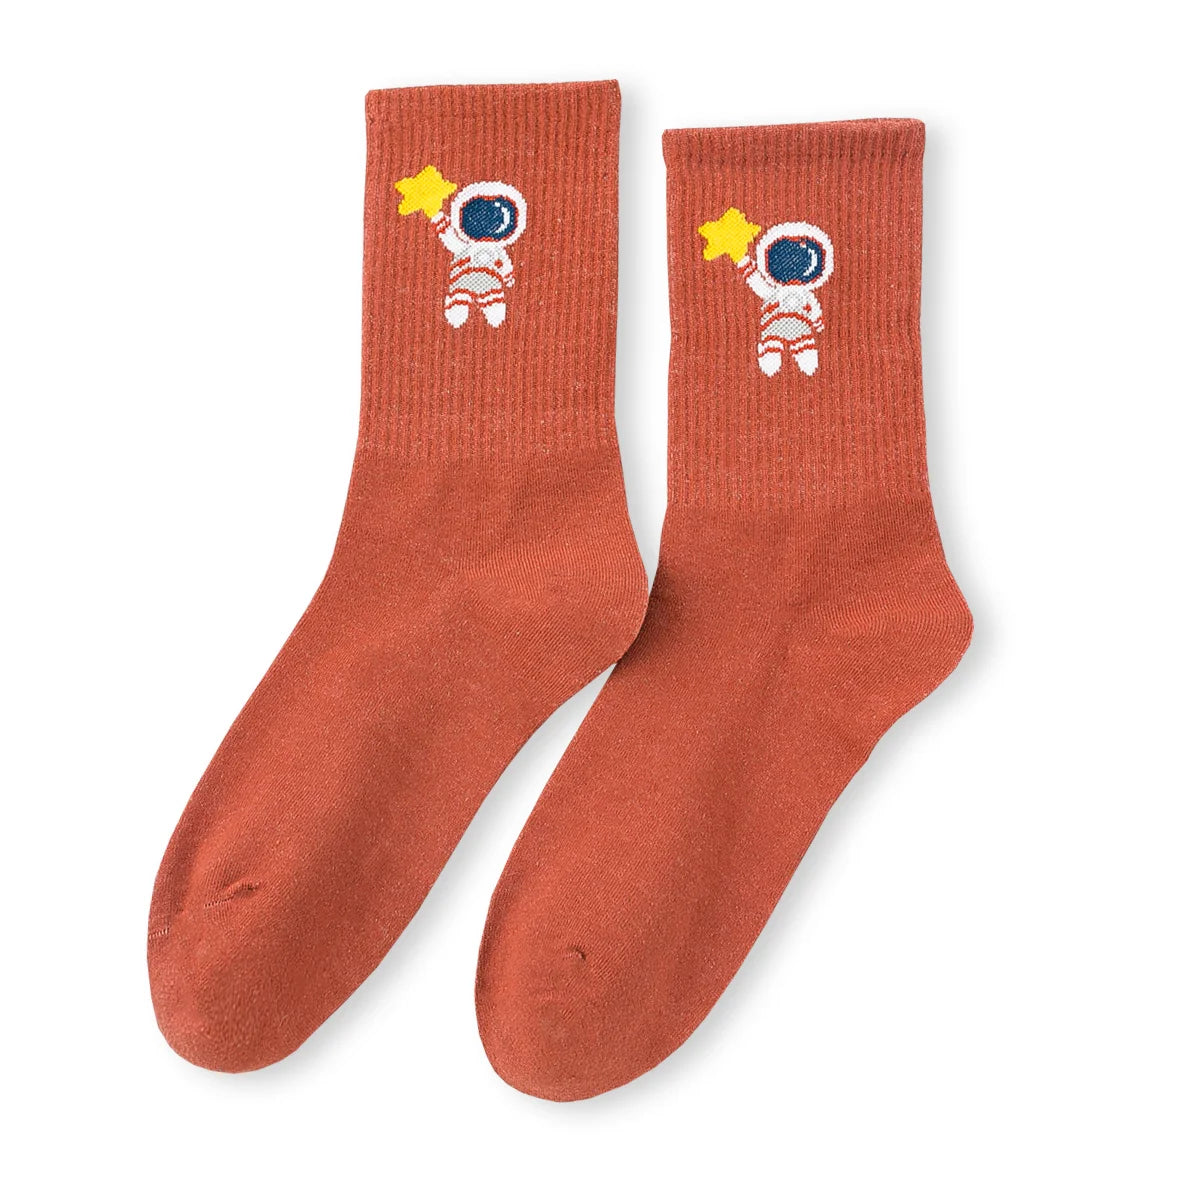 Chaussettes orange adultes en coton représentant des petits astronautes | Chaussettes abordables et de haute qualité | Un excellent choix pour les adultes qui aiment l'espace et les astronautes